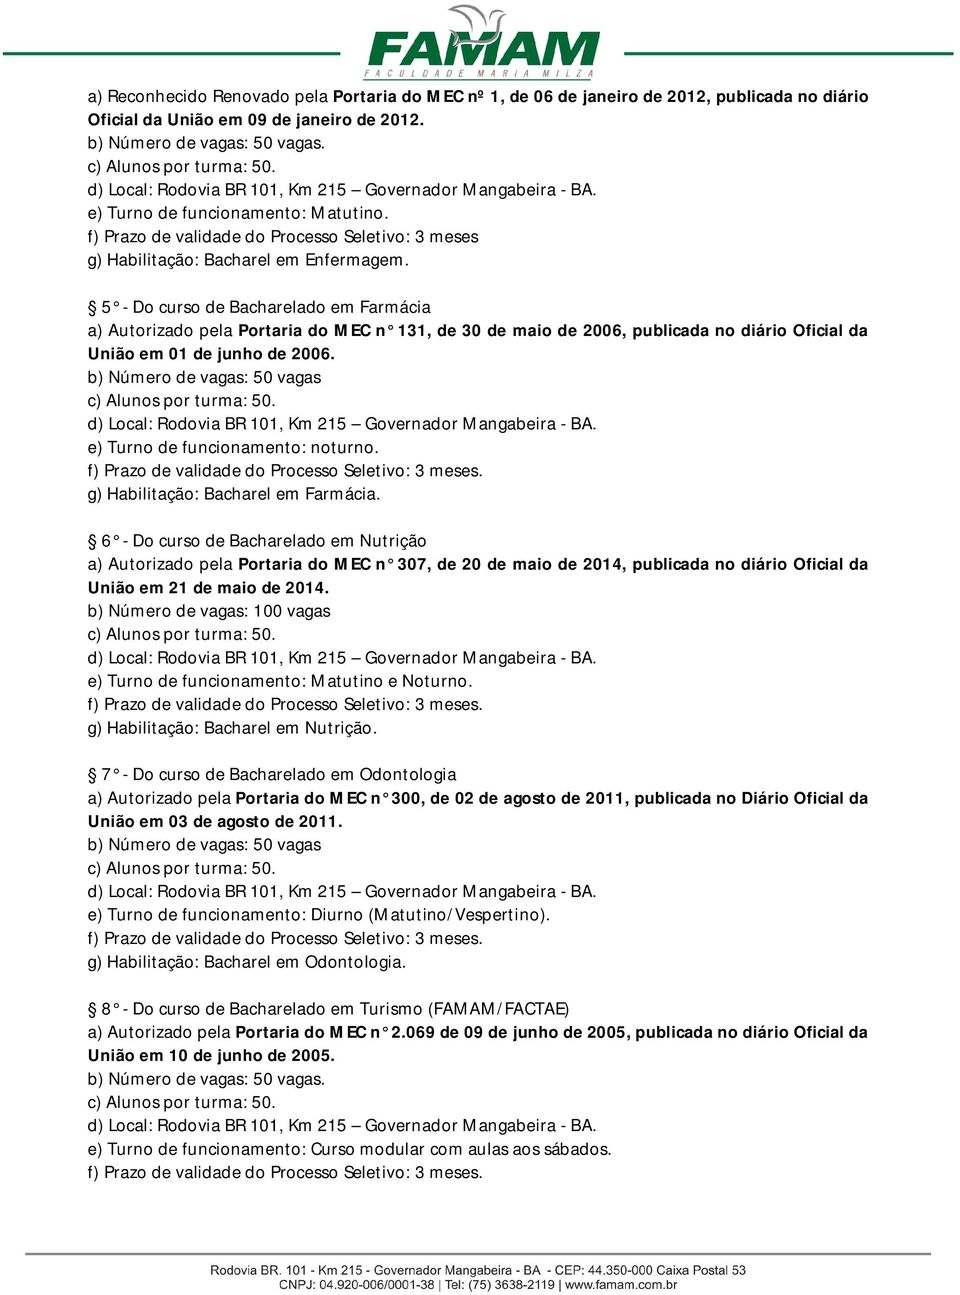 5 - Do curso de Bacharelado em Farmácia a) Autorizado pela Portaria do MEC n 131, de 30 de maio de 2006, publicada no diário Oficial da União em 01 de junho de 2006.